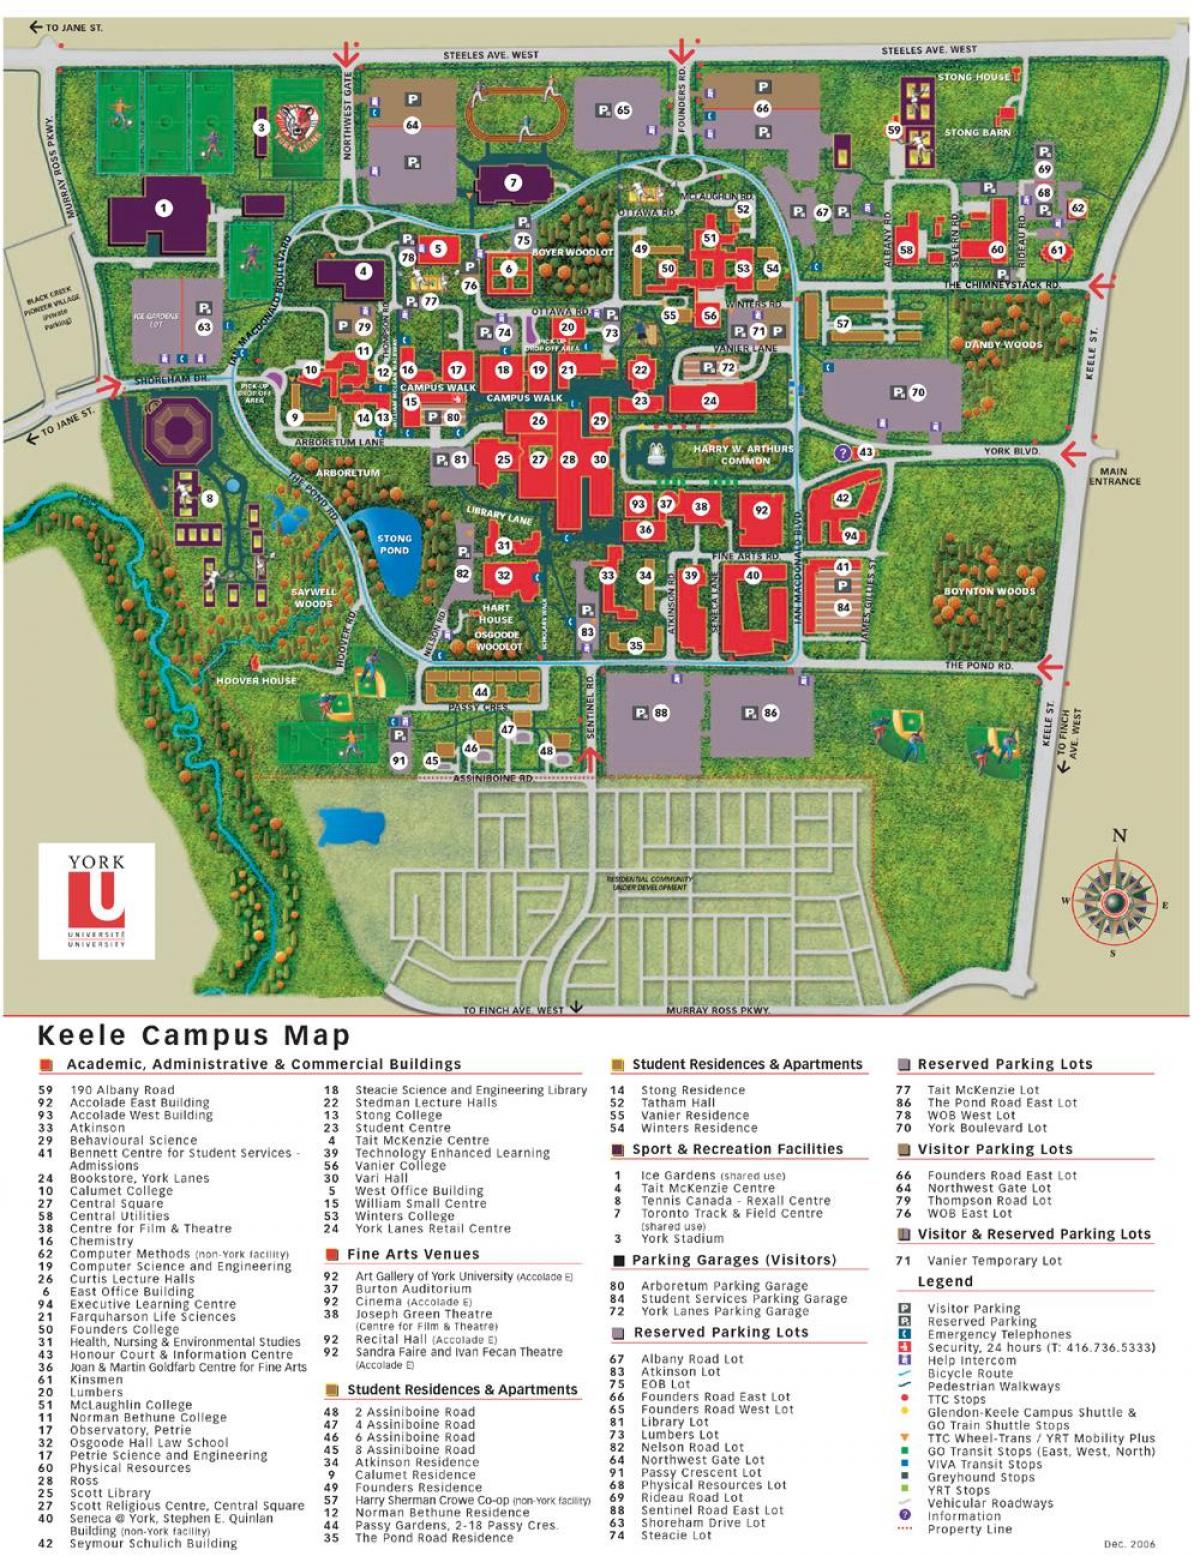 Mapa de York de la universidad de keele campus